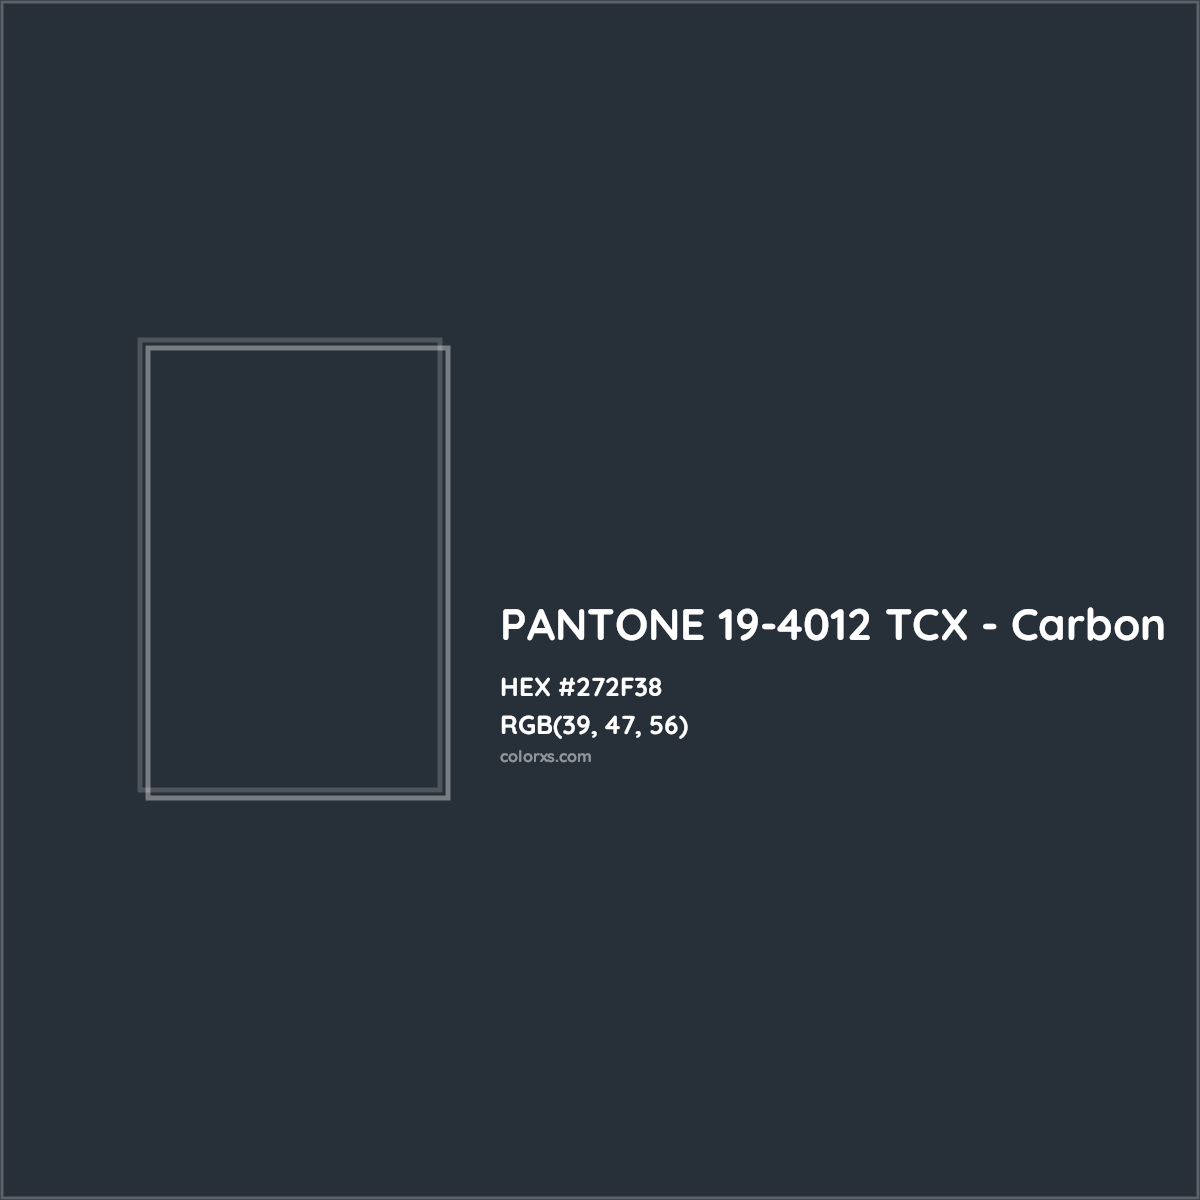 HEX #272F38 PANTONE 19-4012 TCX - Carbon CMS Pantone TCX - Color Code